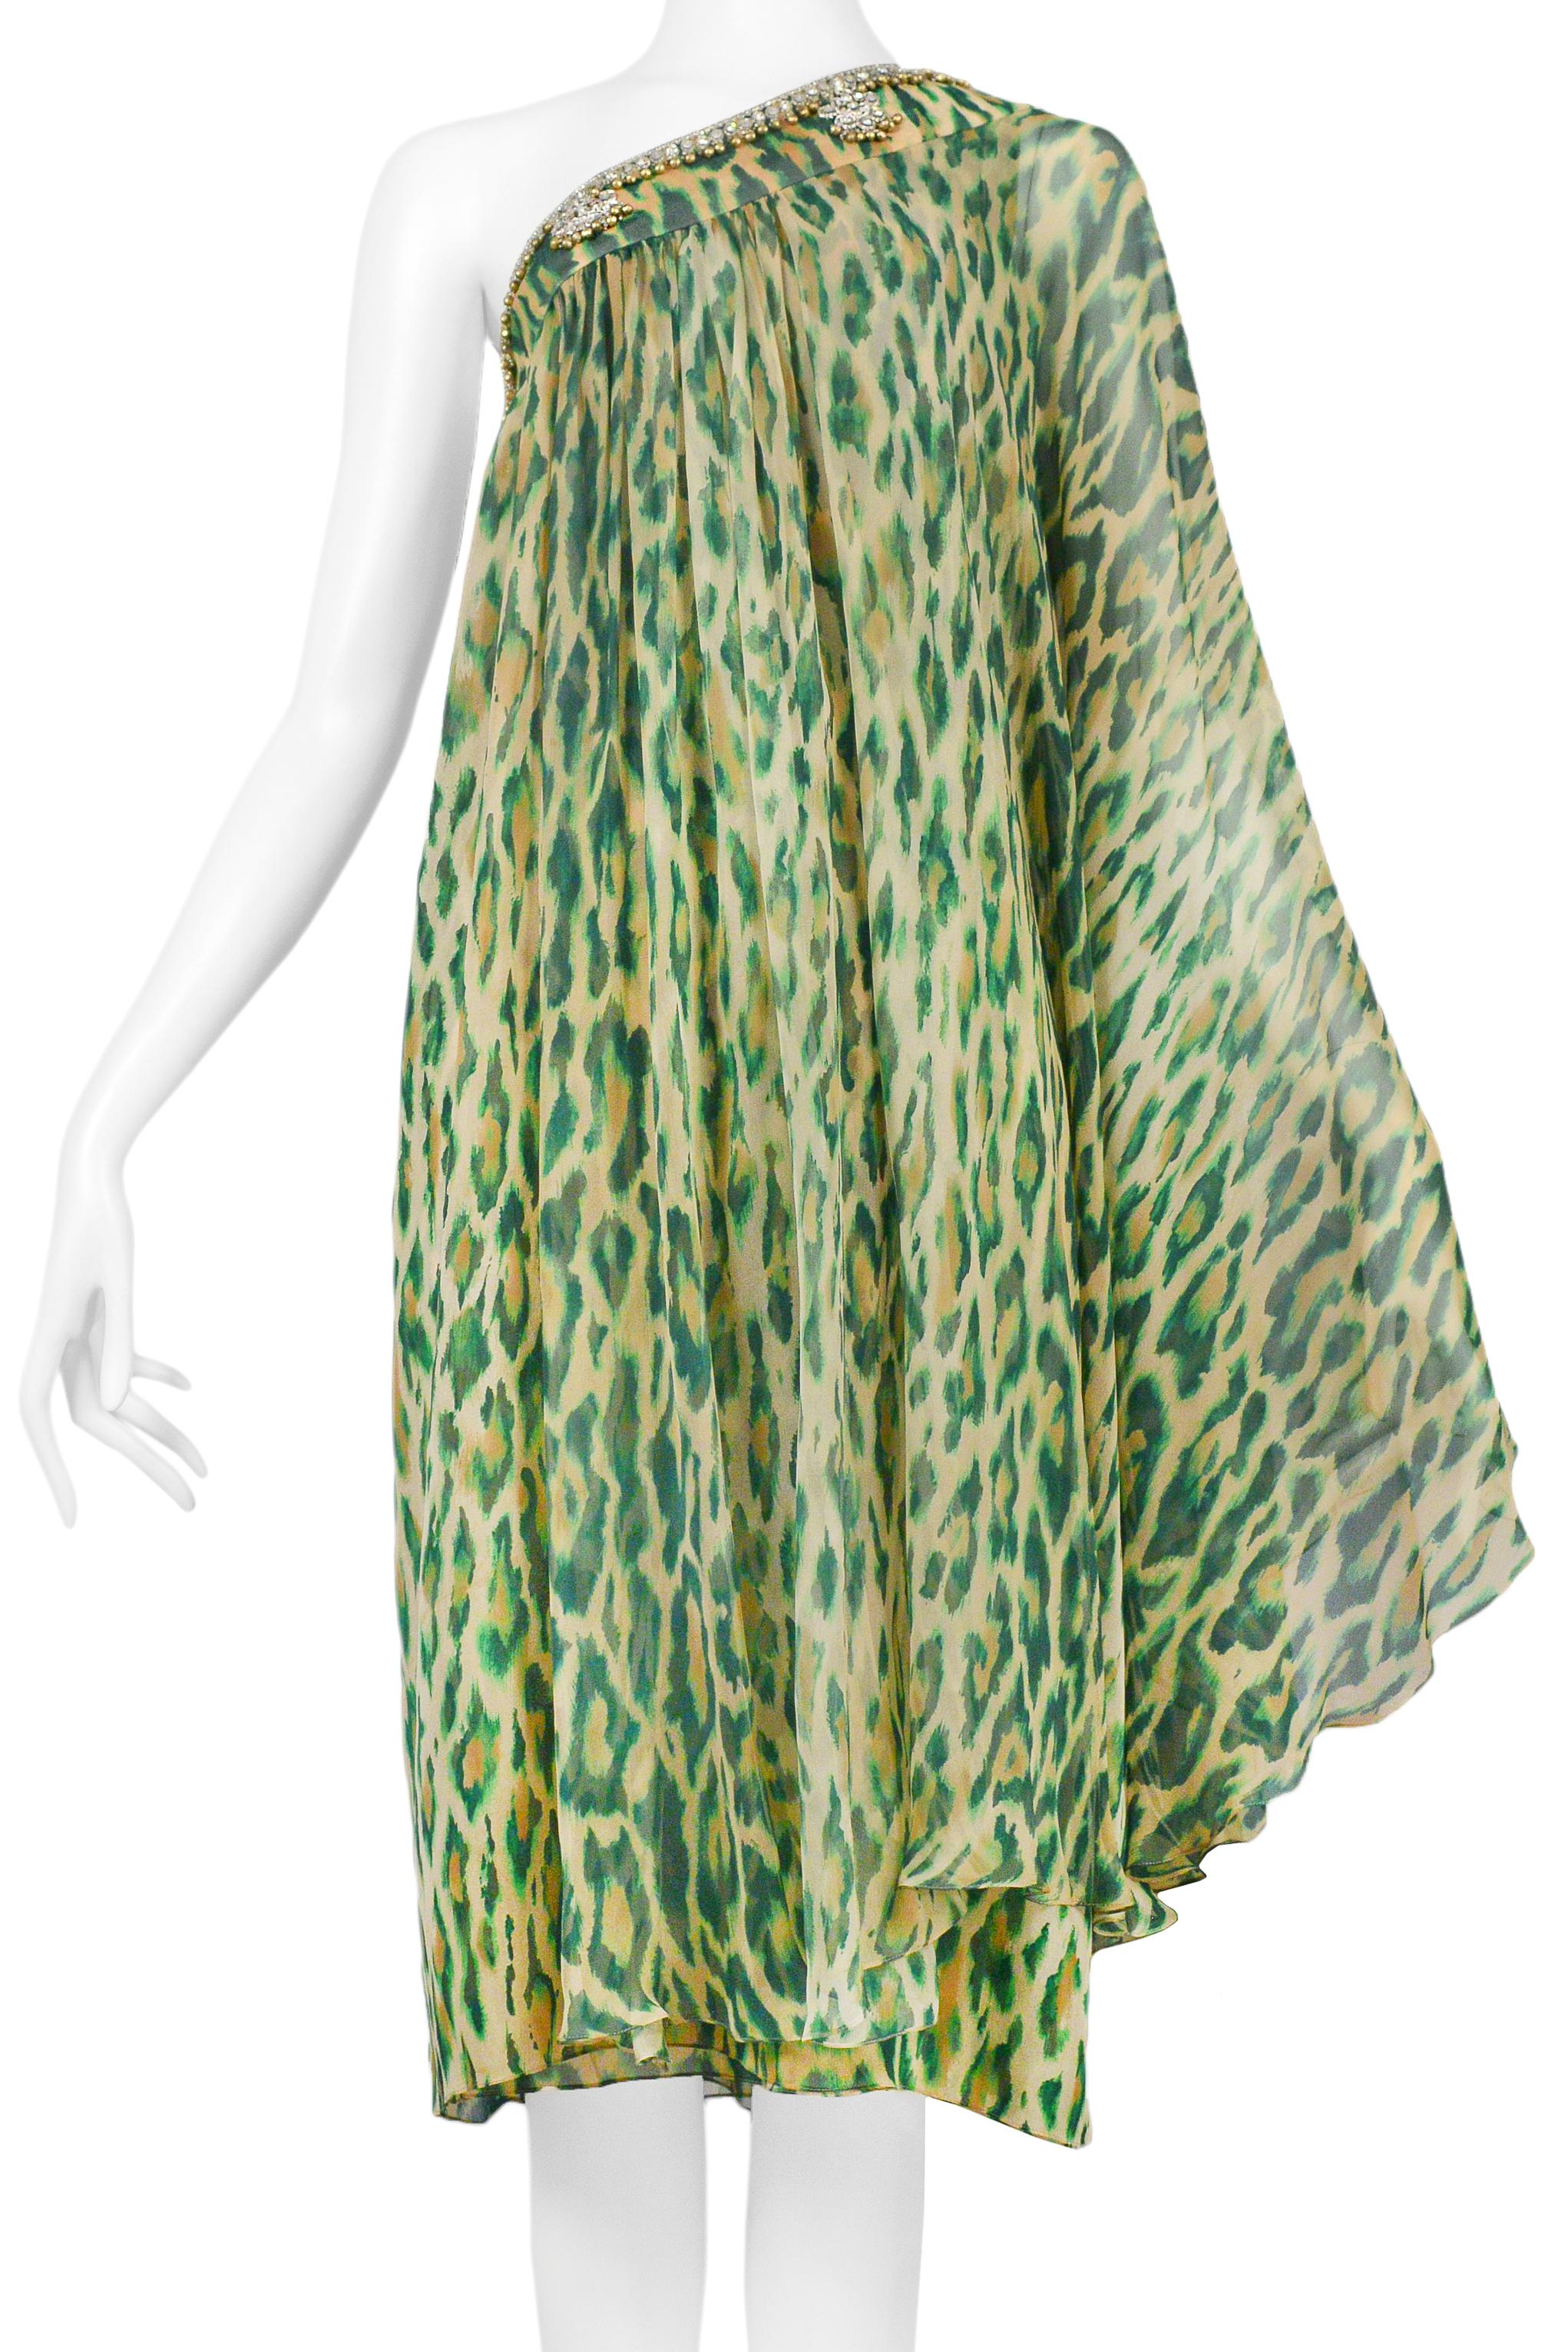 Christian Dior Green Leopard One Shoulder Sari Dress 2008 For Sale 1